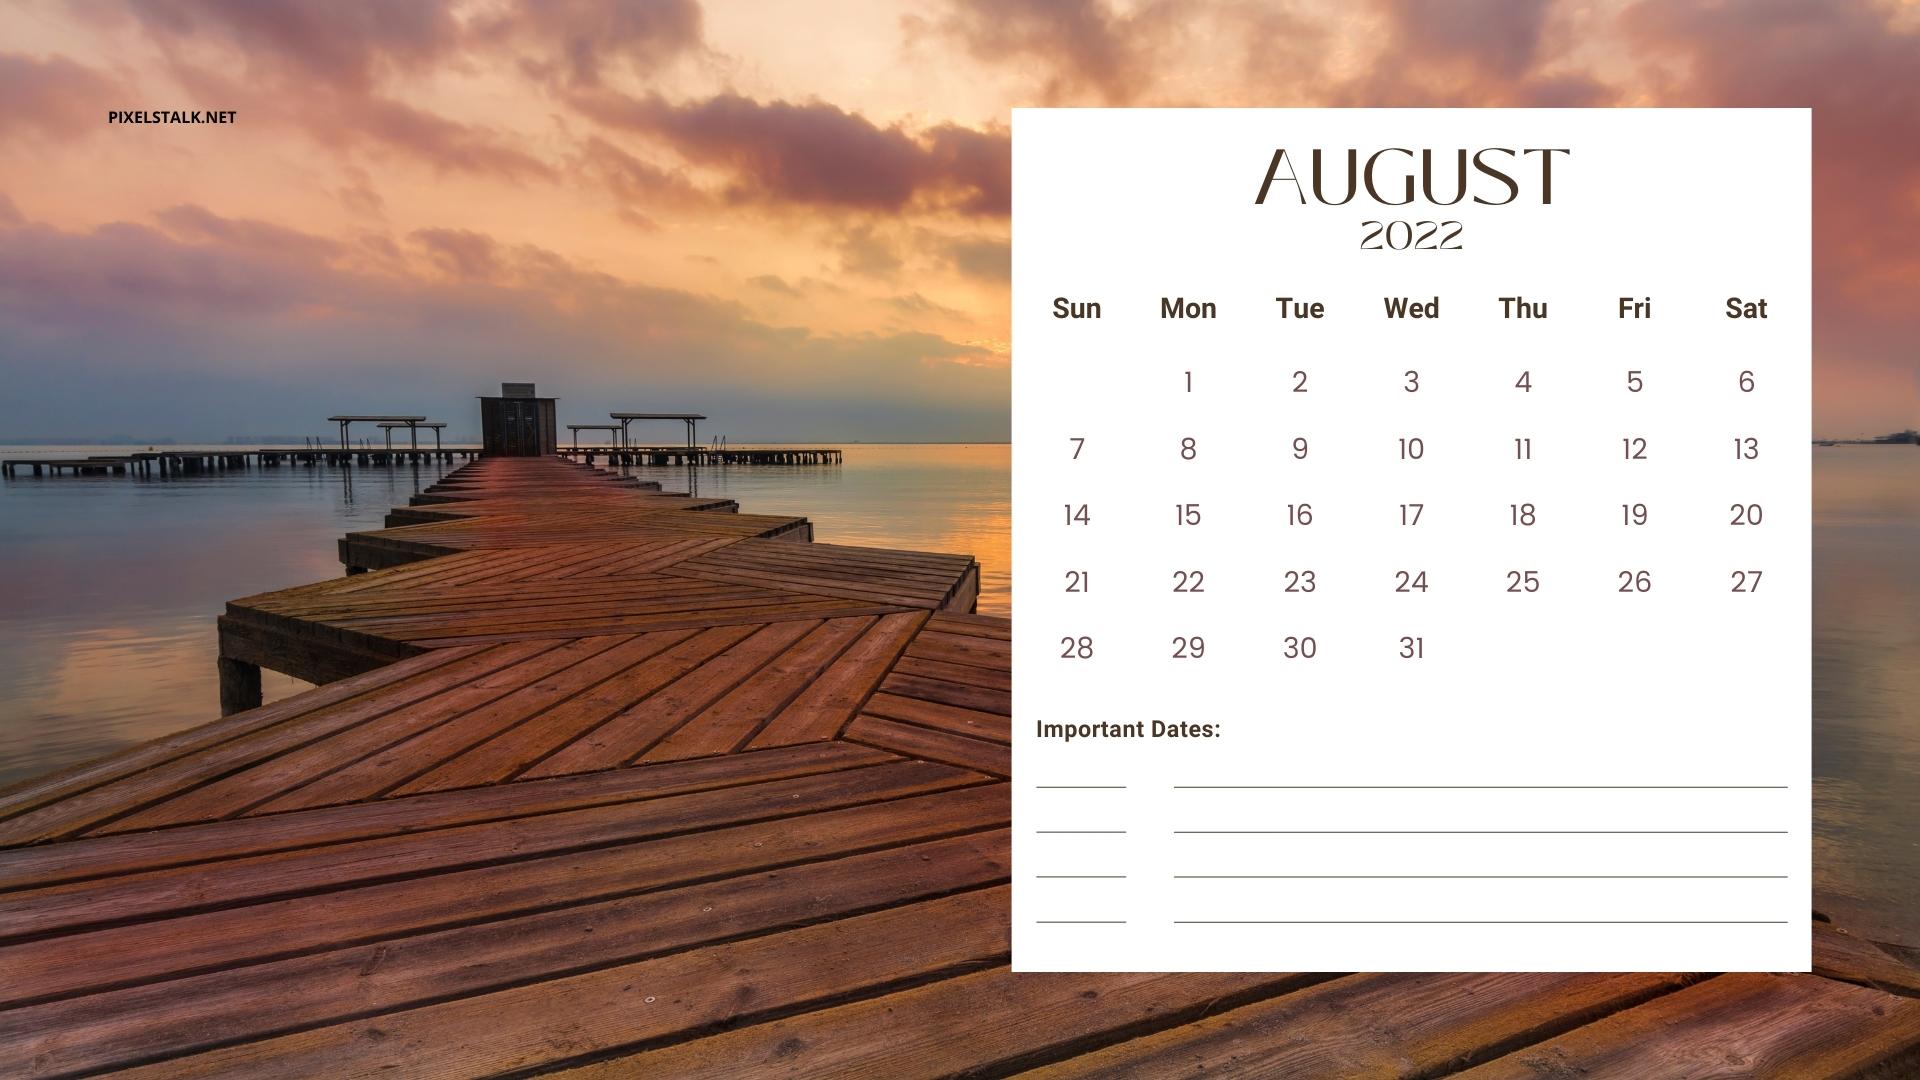 August 2022 calendar wallpaper  Calendar wallpaper August wallpaper  Calendar background